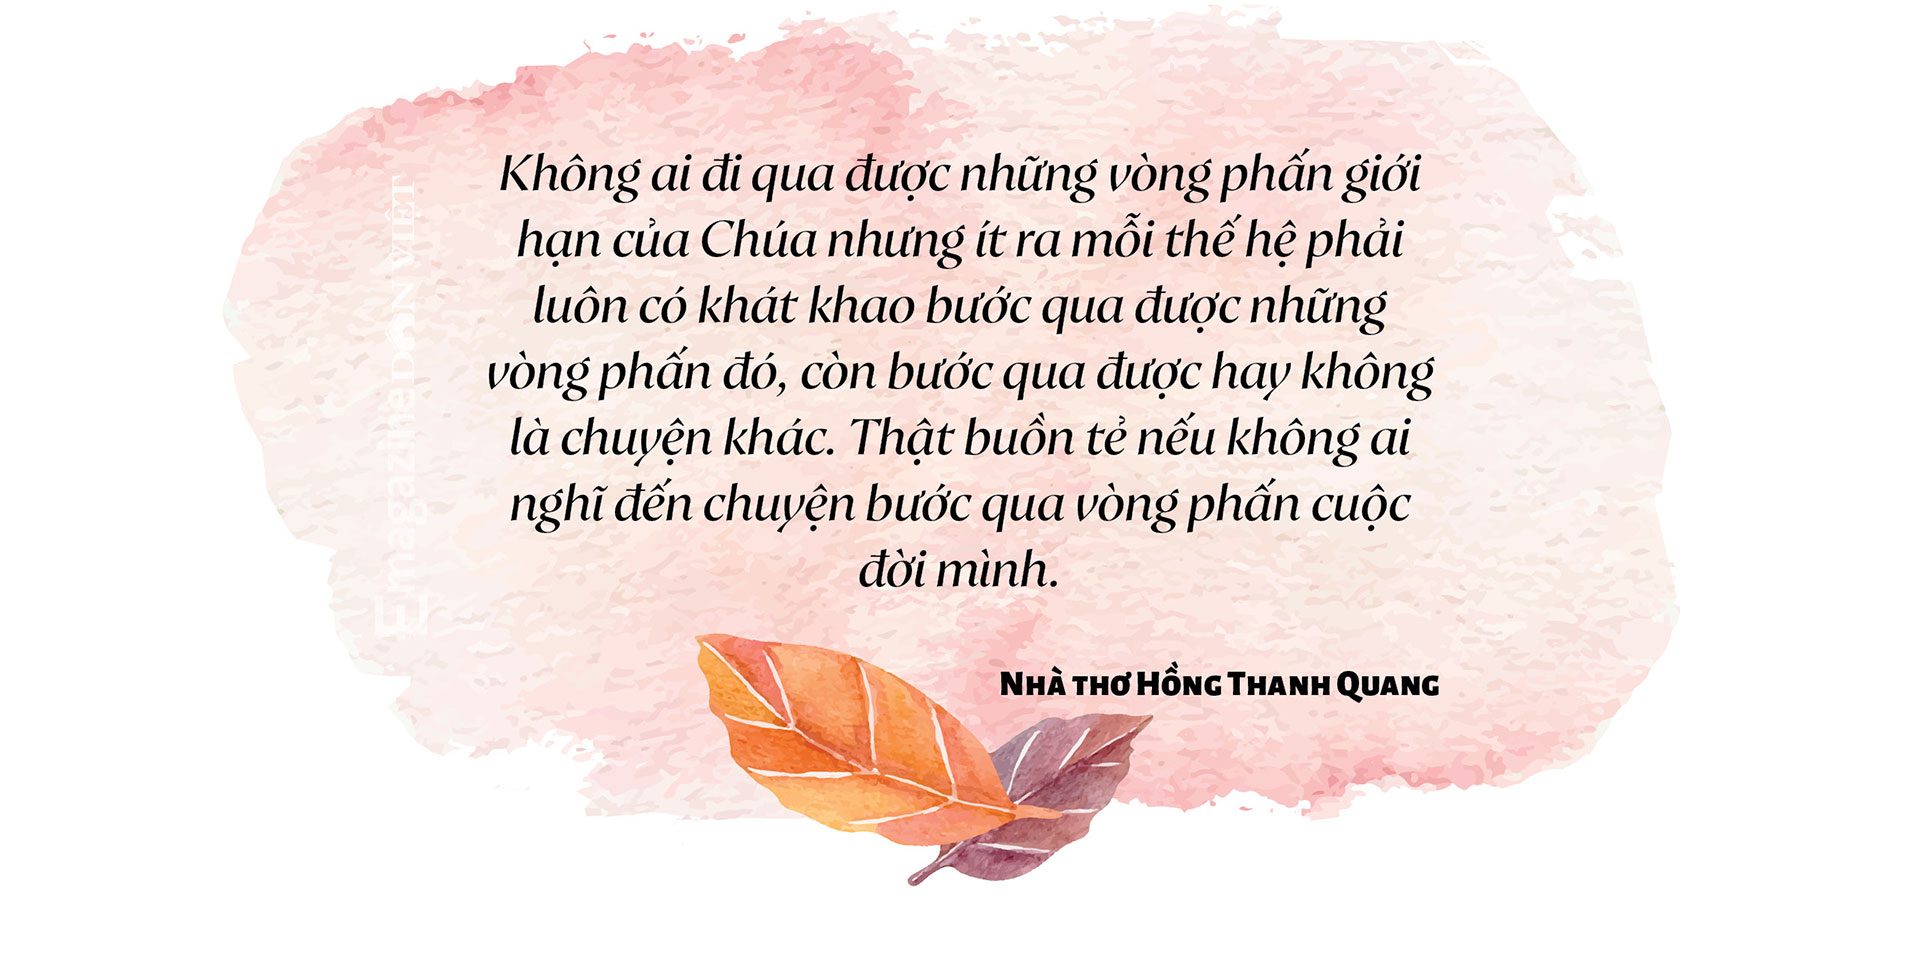 Trò chuyện giữa nhà báo Lưu Quang Định và nhà thơ,  nhà báo Hồng Thanh Quang: Về Thơ, Tình yêu và Cuộc đời - Ảnh 31.